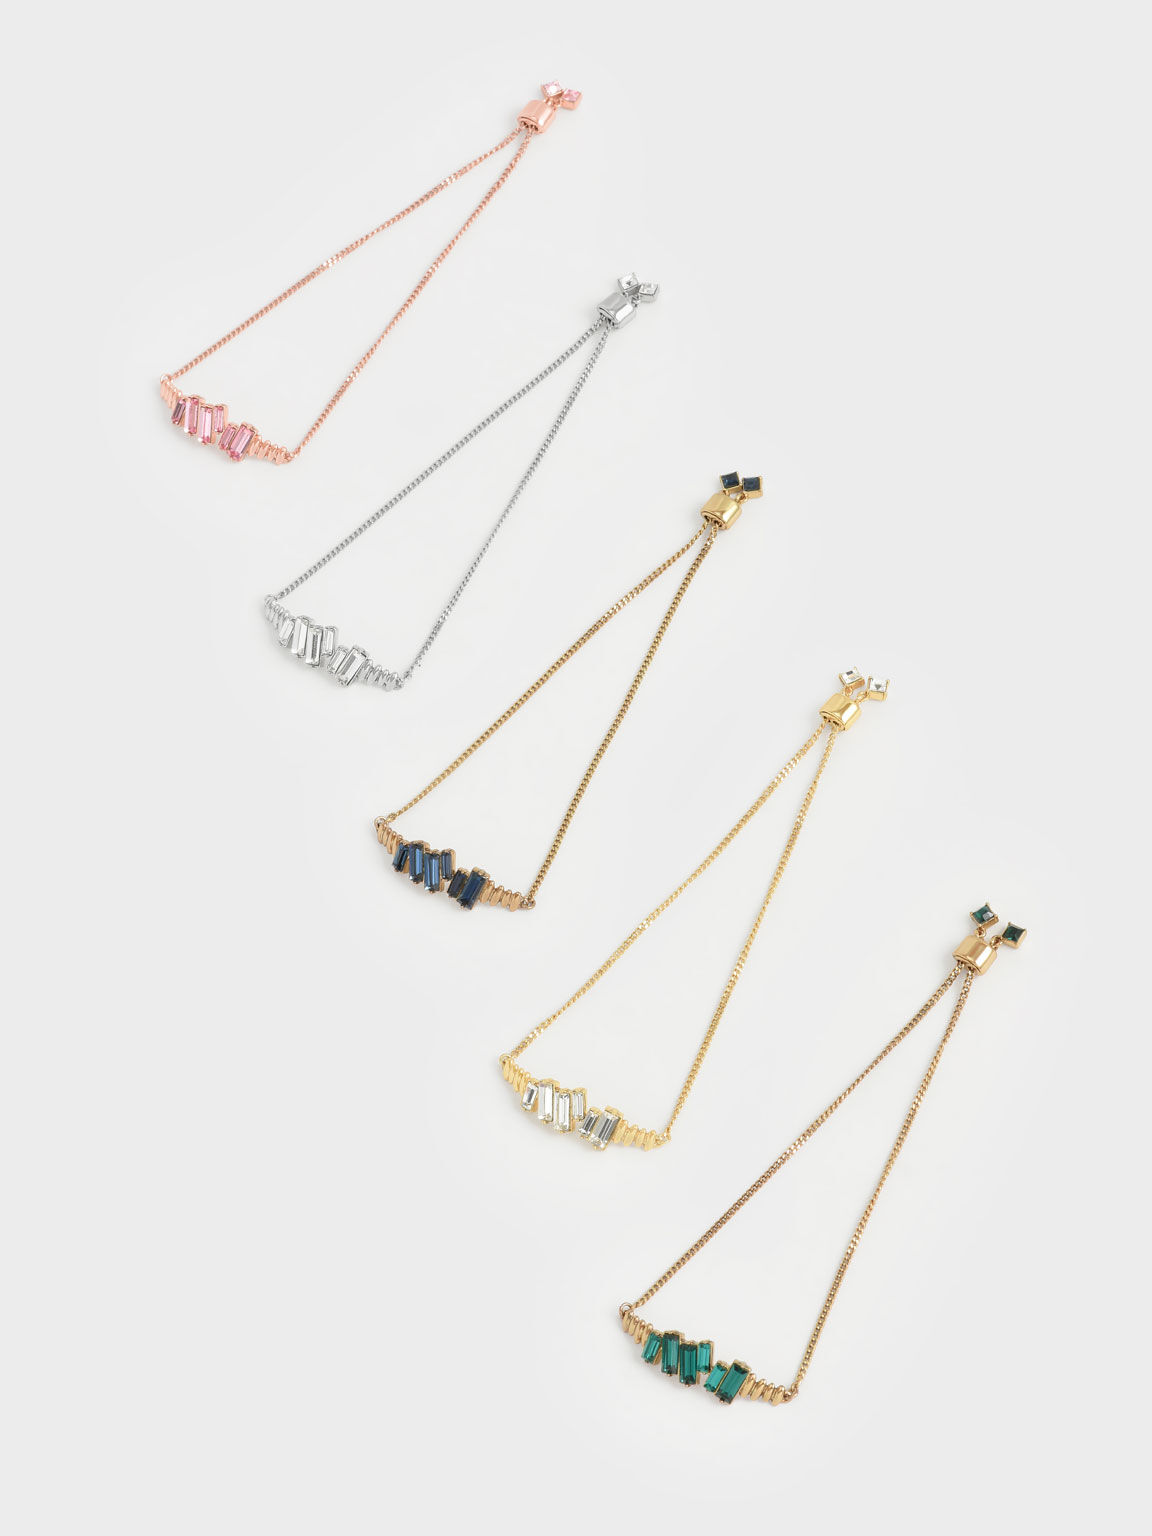 Swarovski® Crystal Embellished Chain Bracelet - Rose Gold